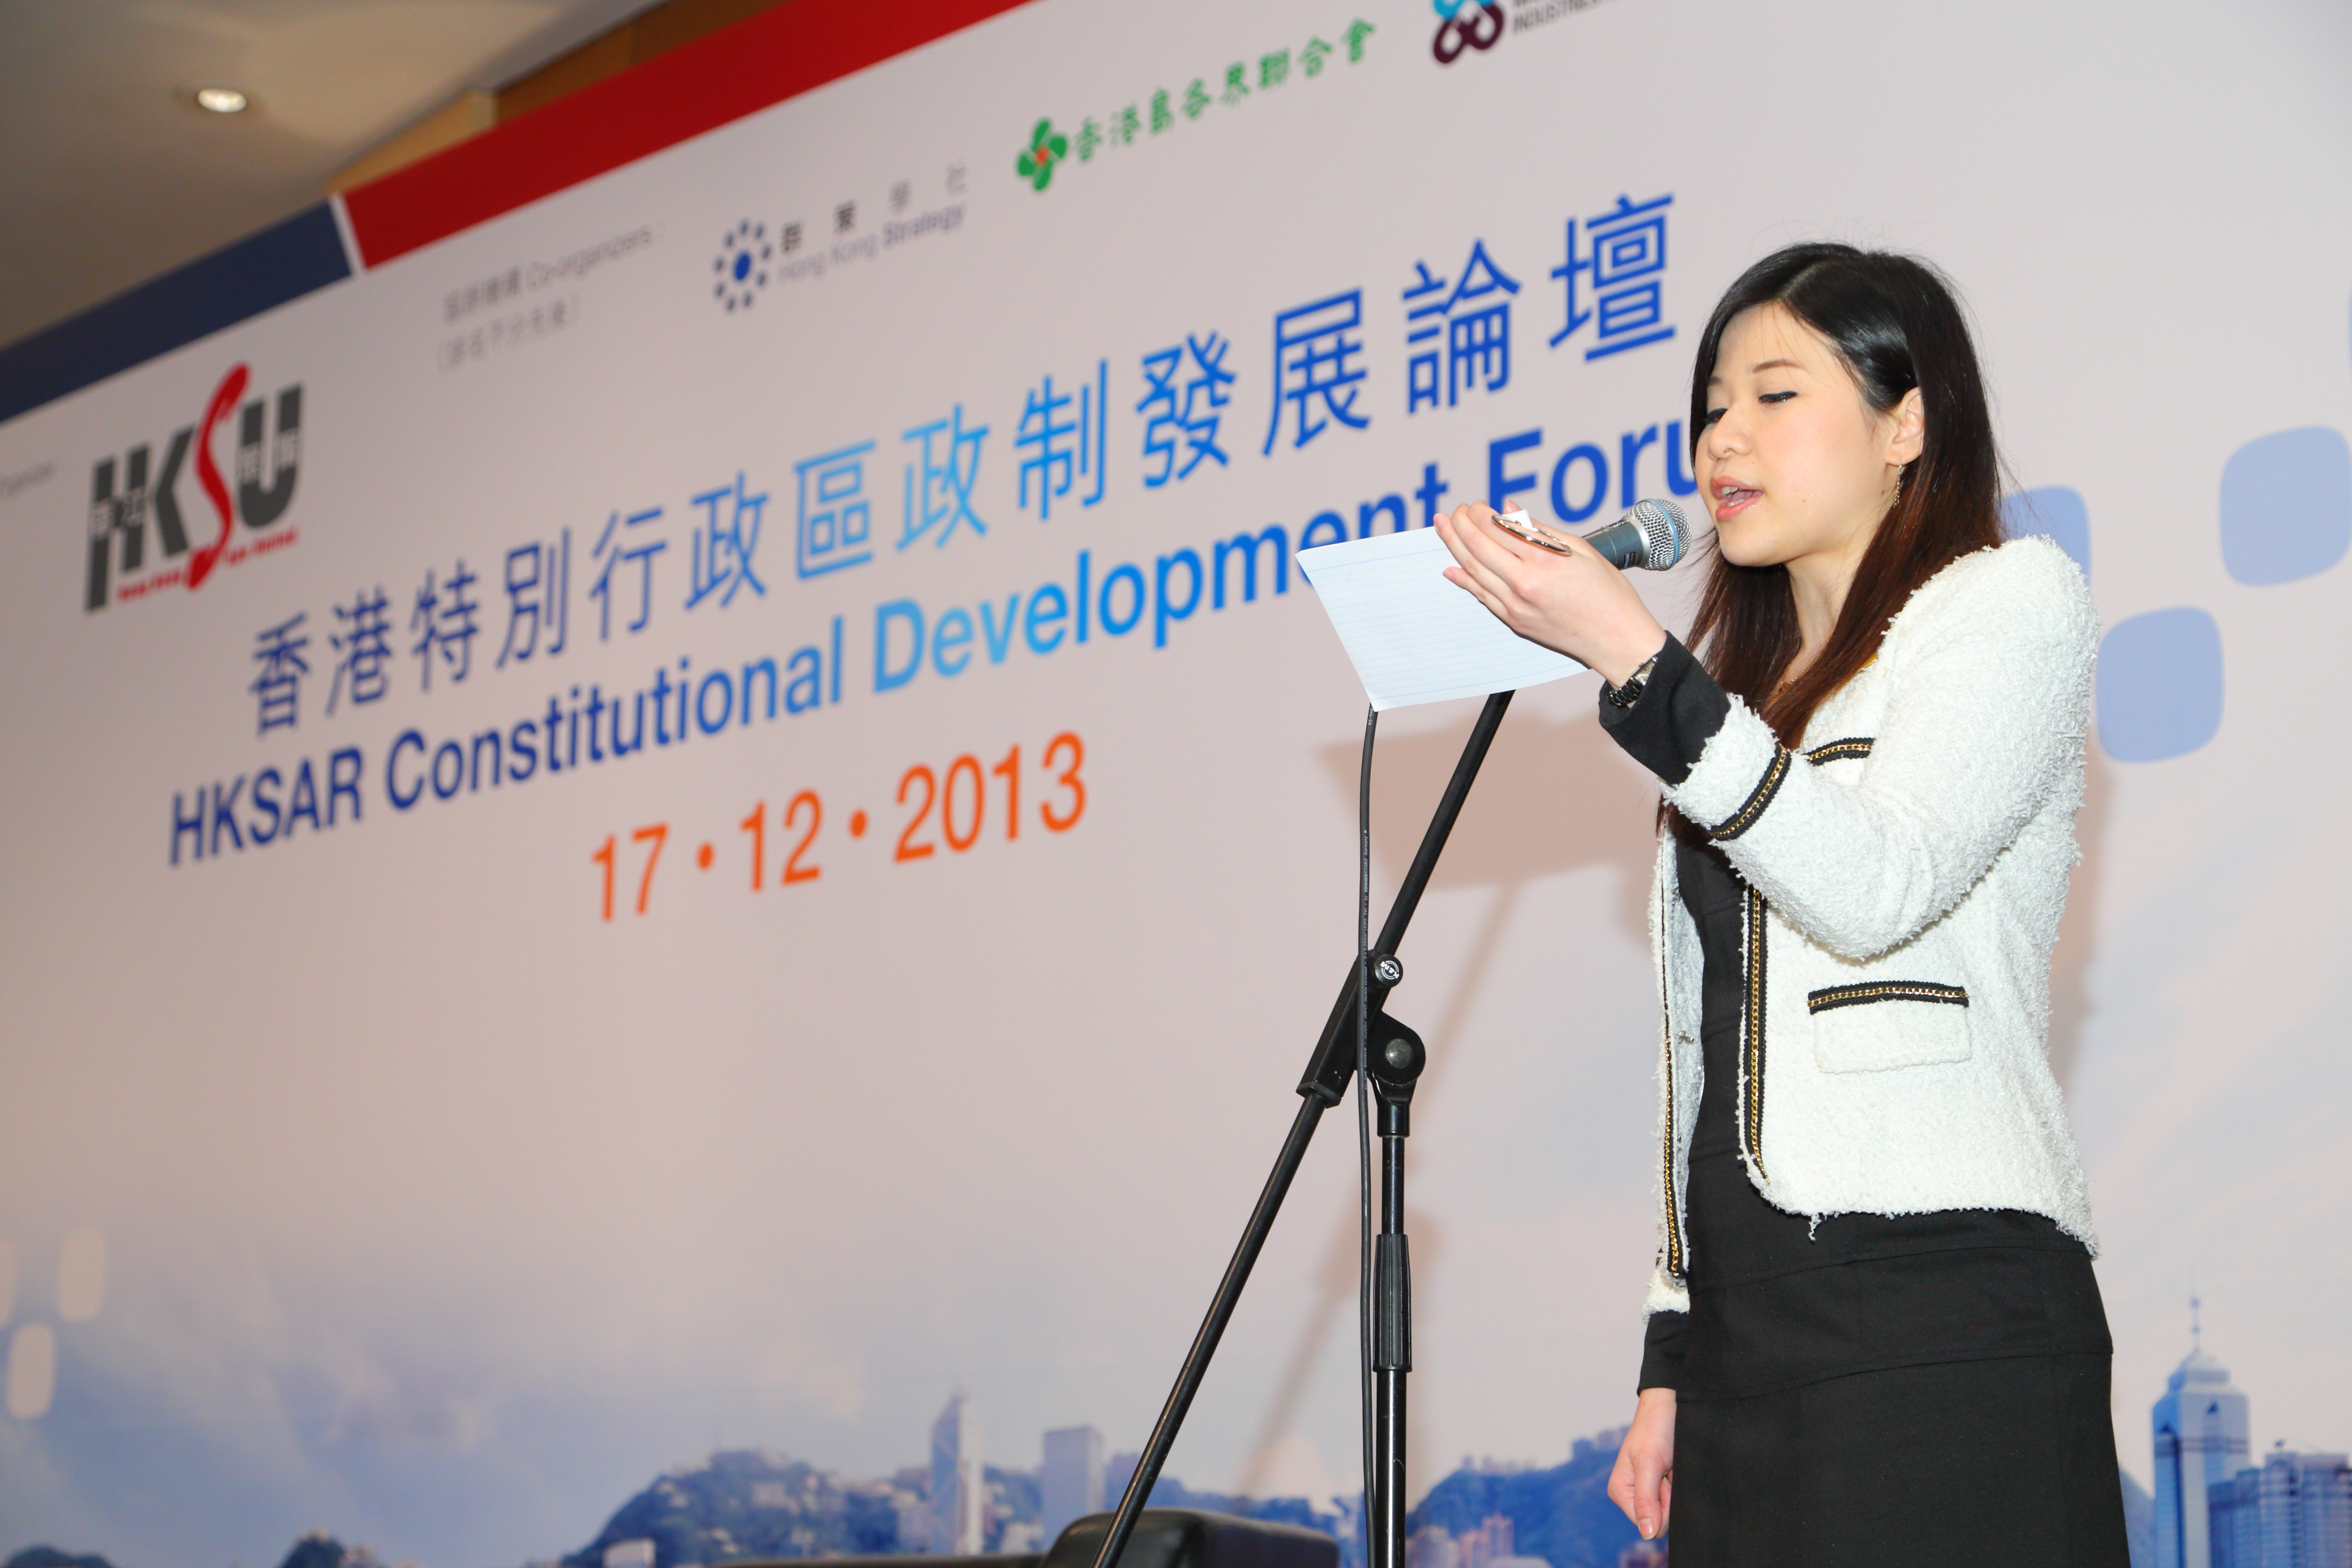 香港特別行政區政制發展論壇